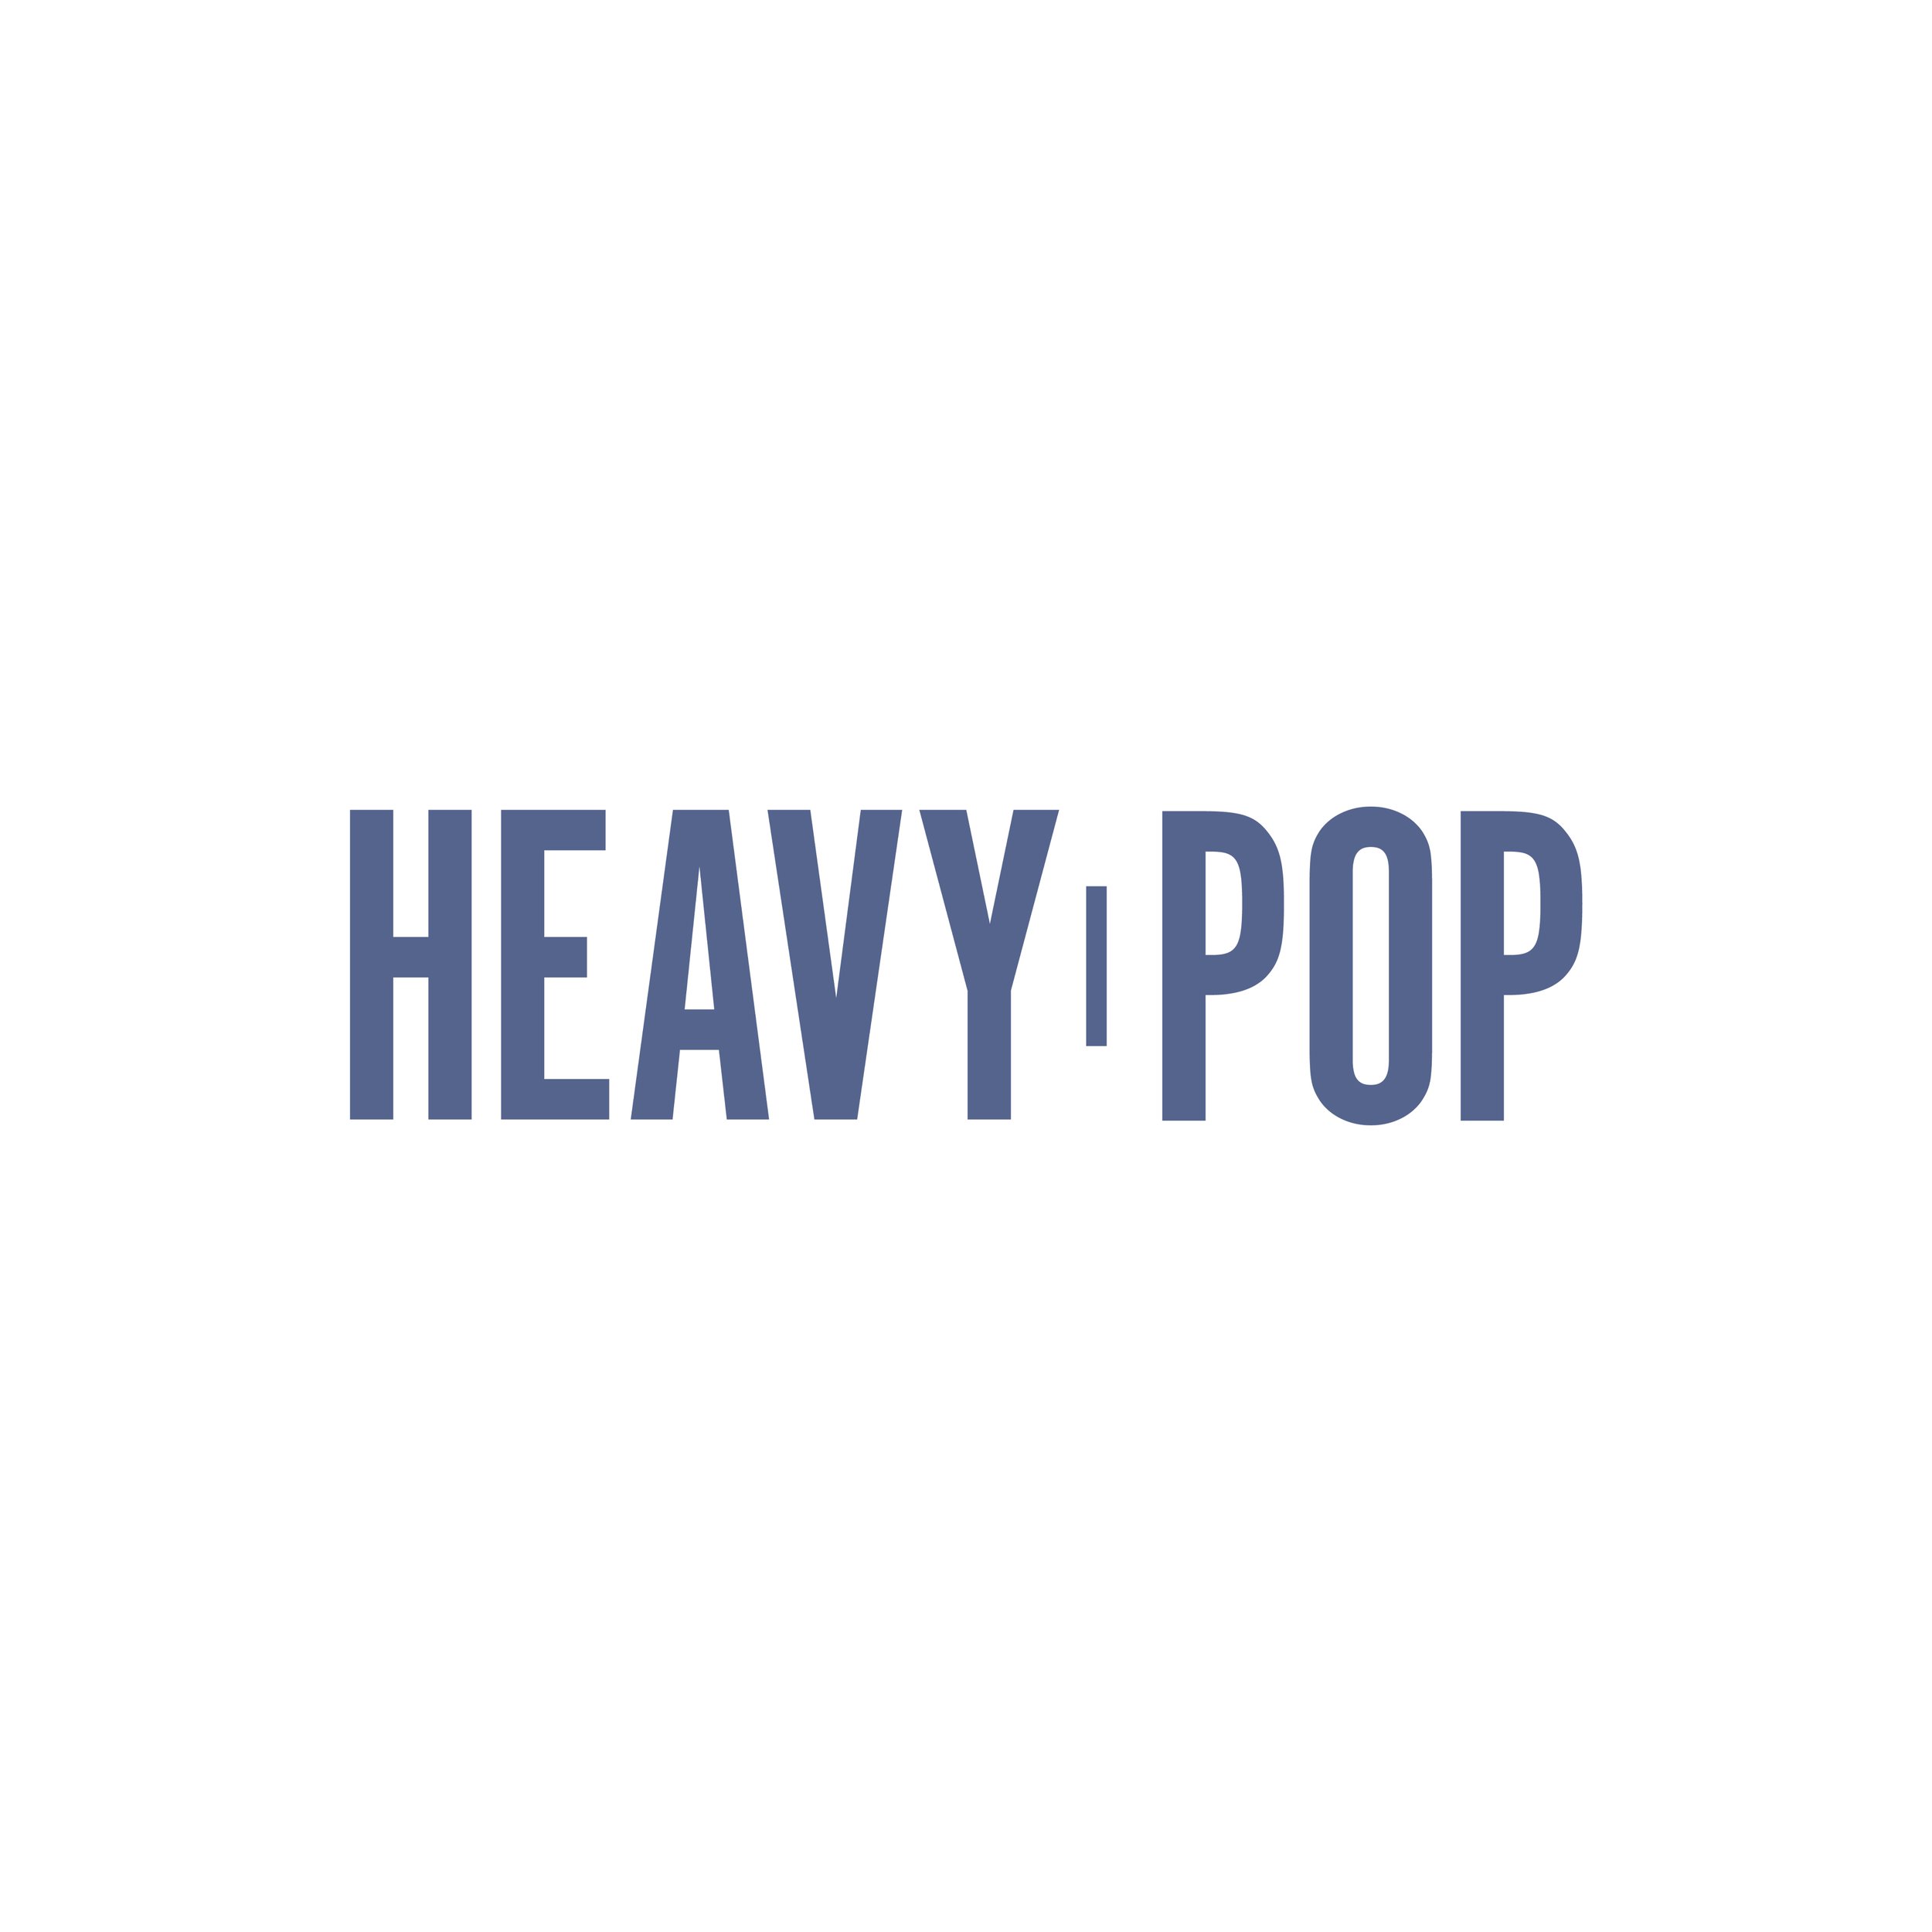 heavy pop logo final social blue on white.jpg